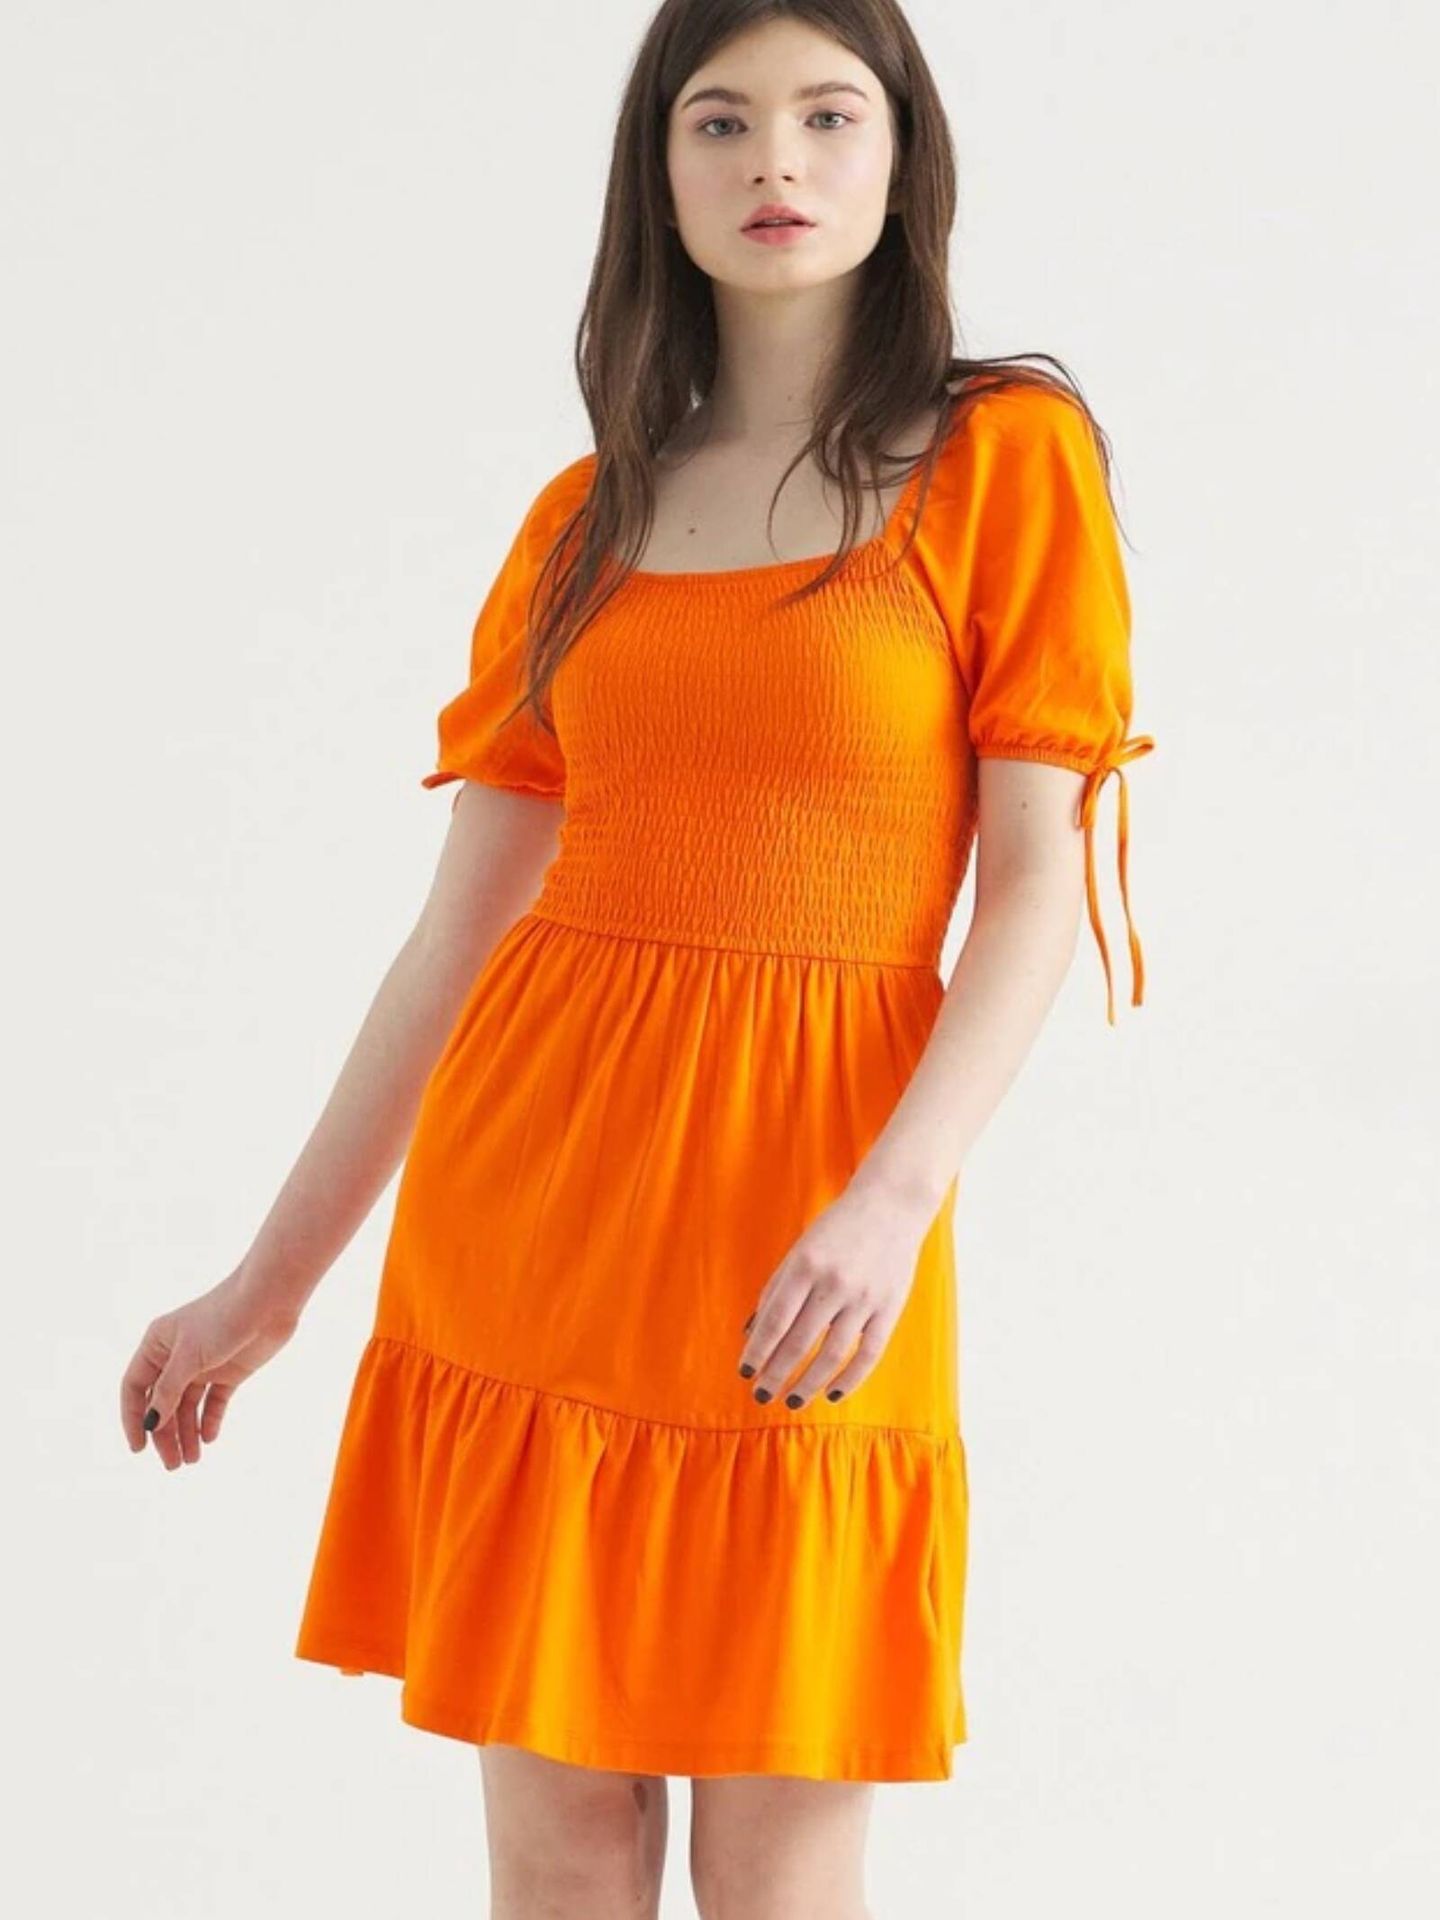 10 nuevos vestidos low cost para primavera. (El Corte Inglés/Cortesía)